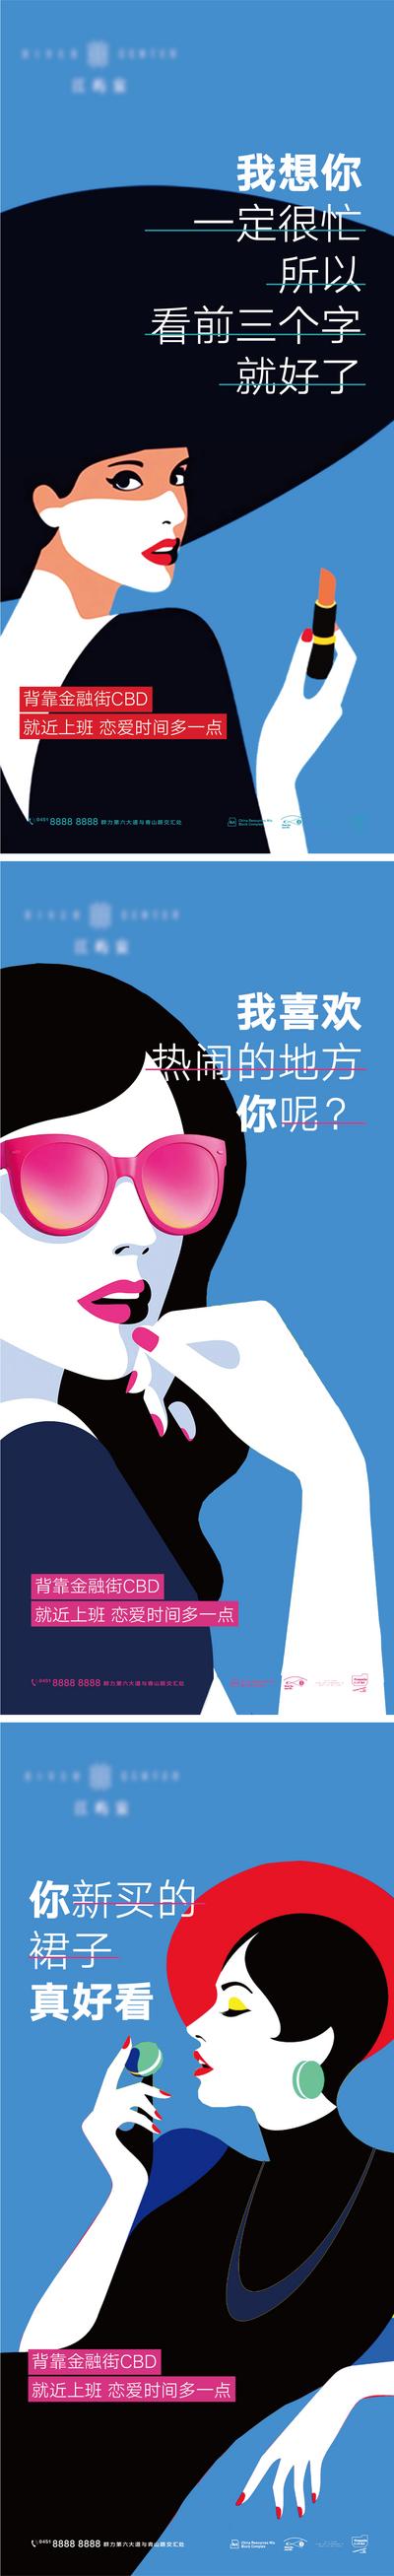 【南门网】海报 房地产 公历节日 妇女节 女神节 女人 商业 插画 高级 波普 系列